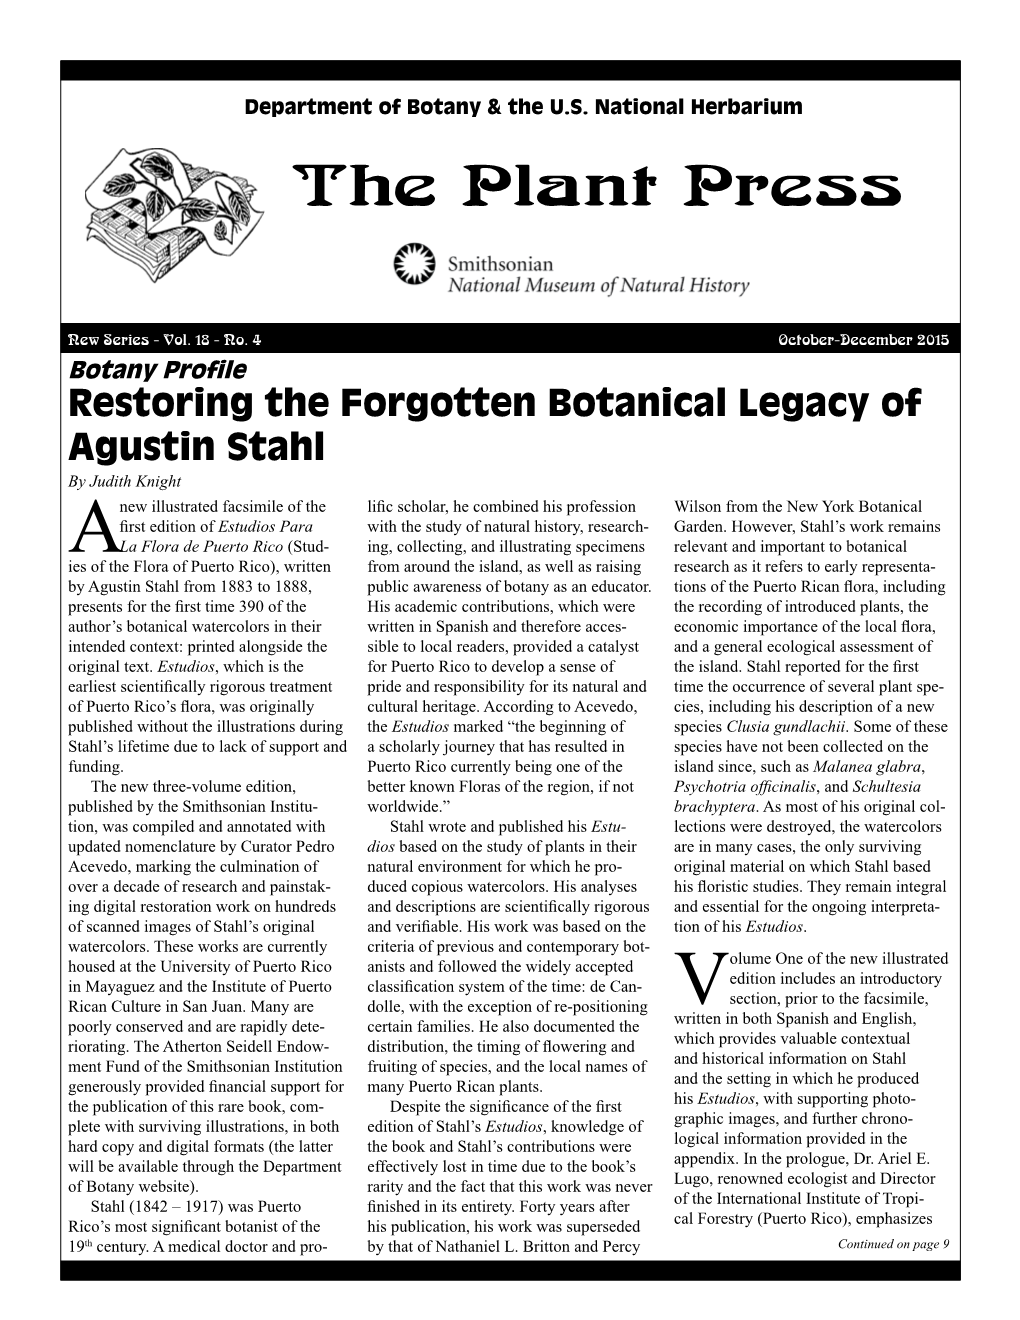 Plant Press, Vol. 18, No. 4